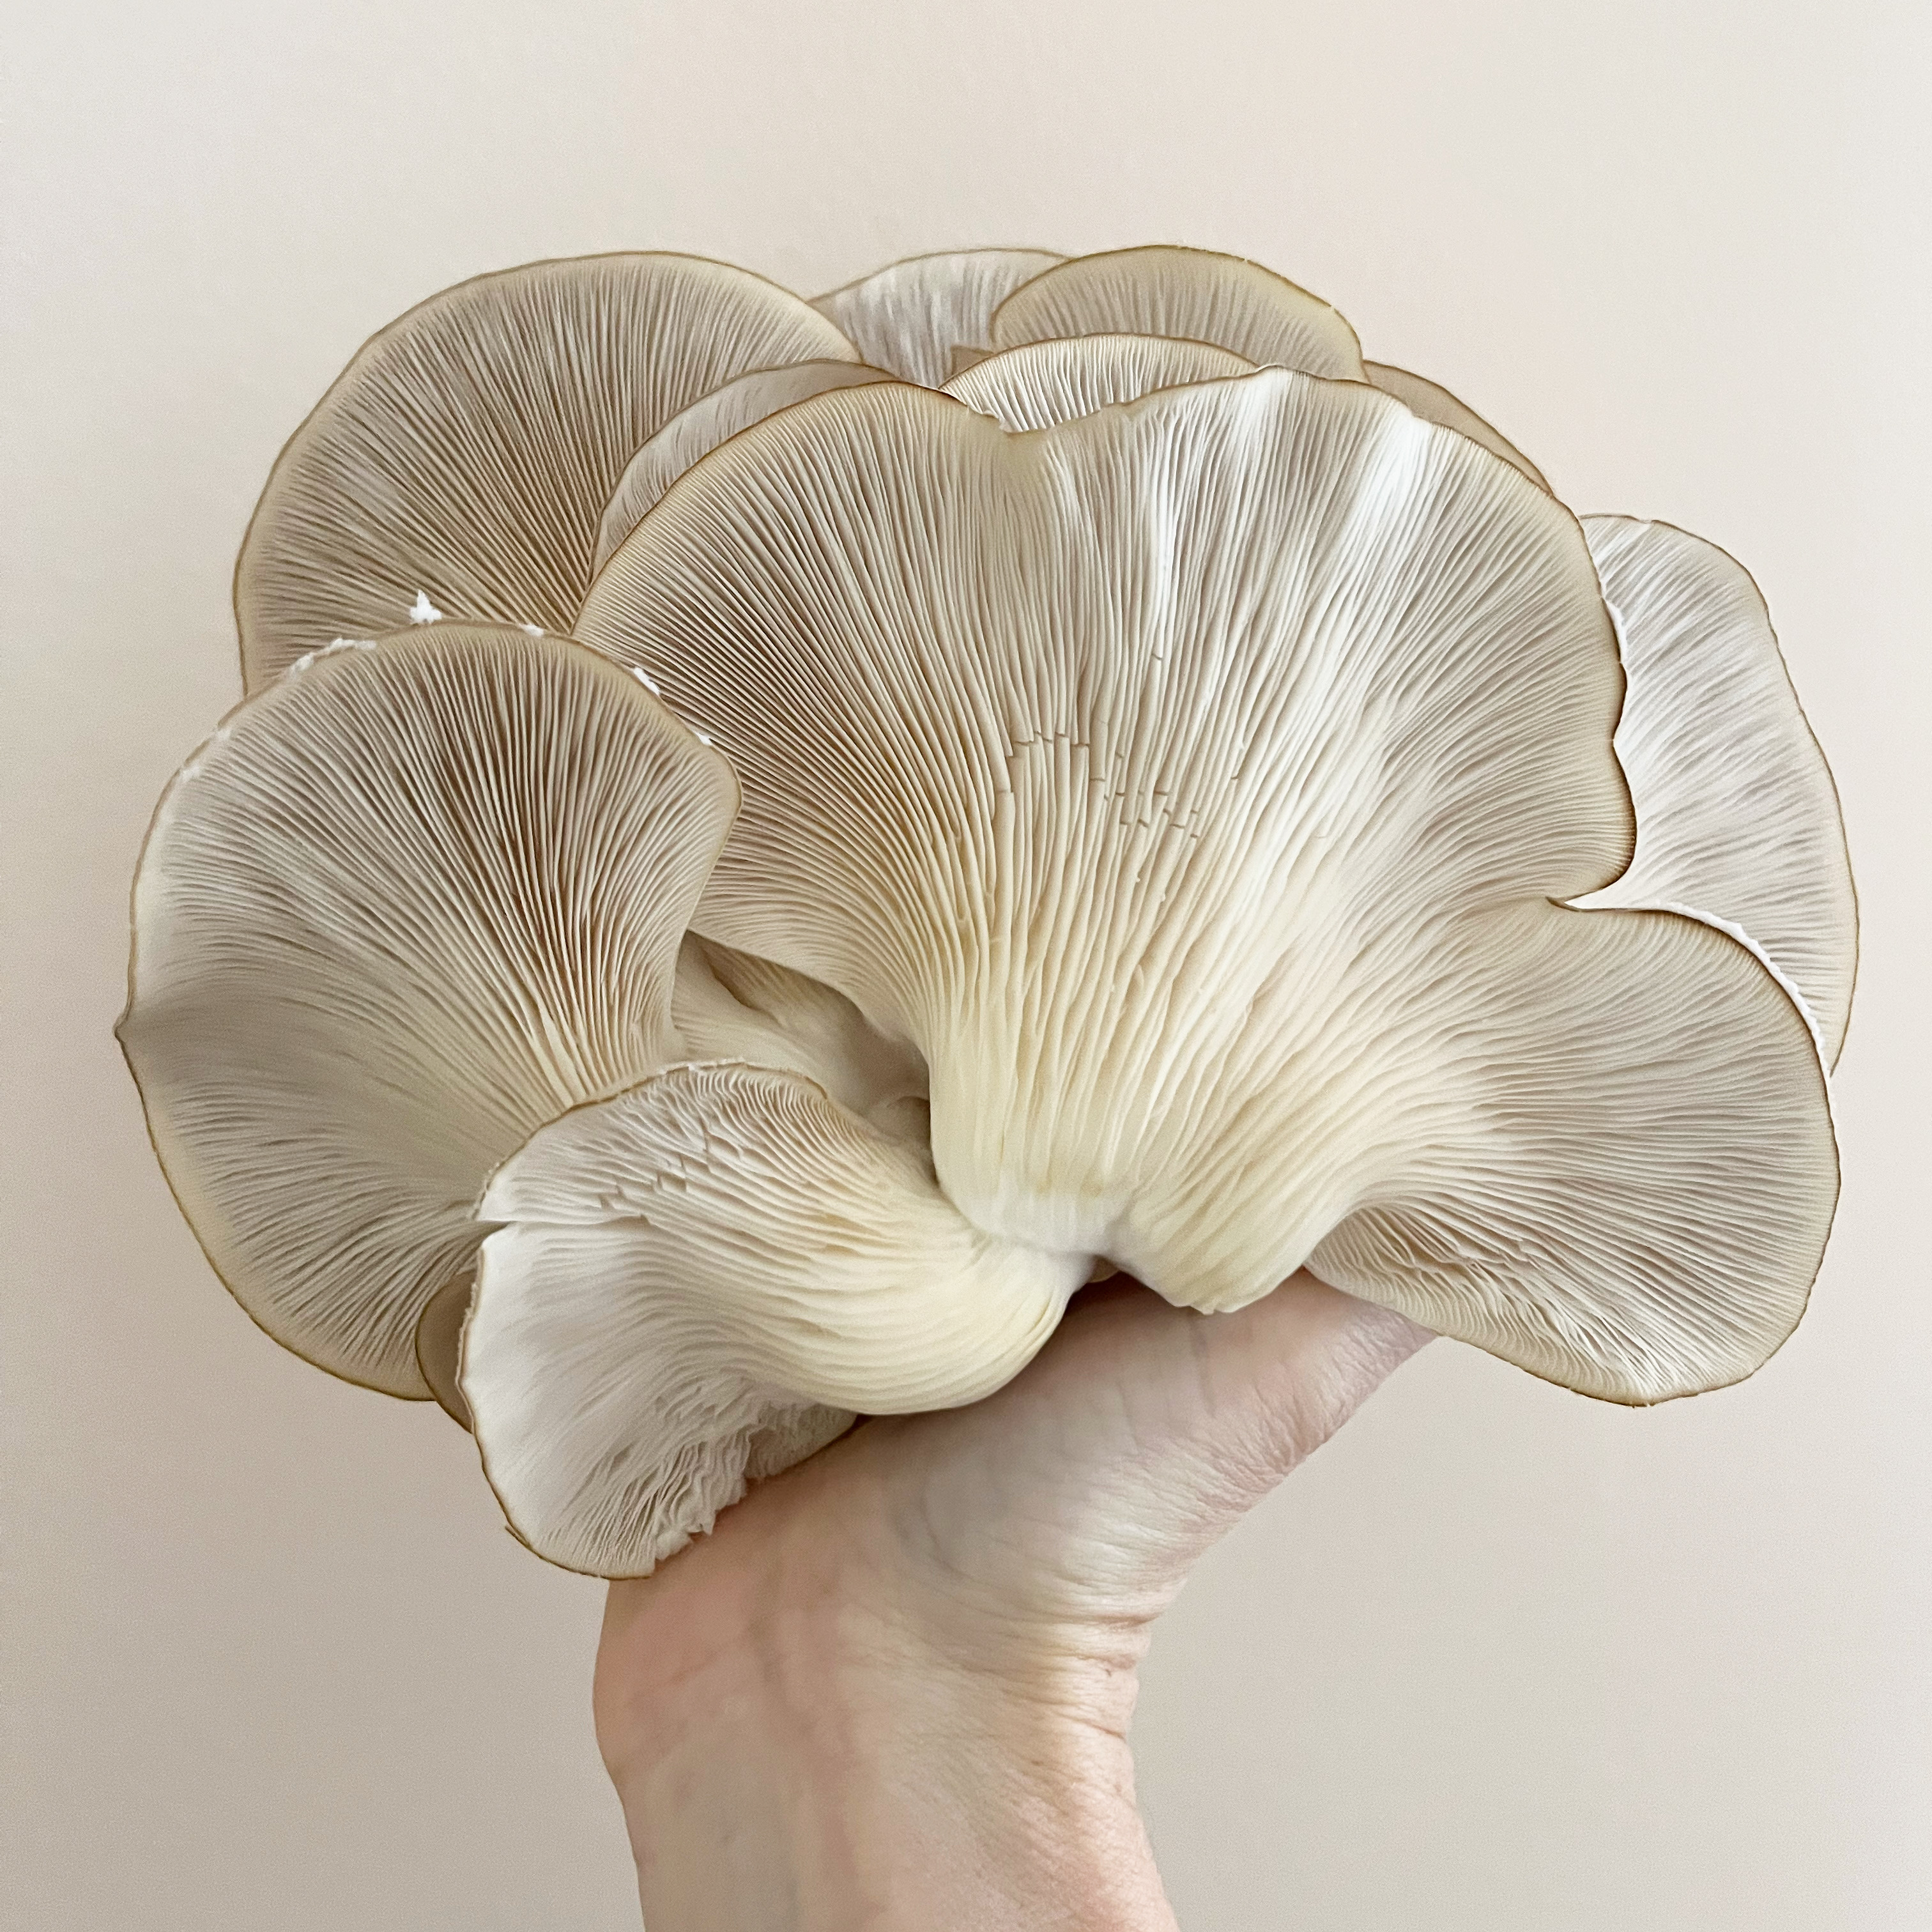 Mushroom image by Erin Moore